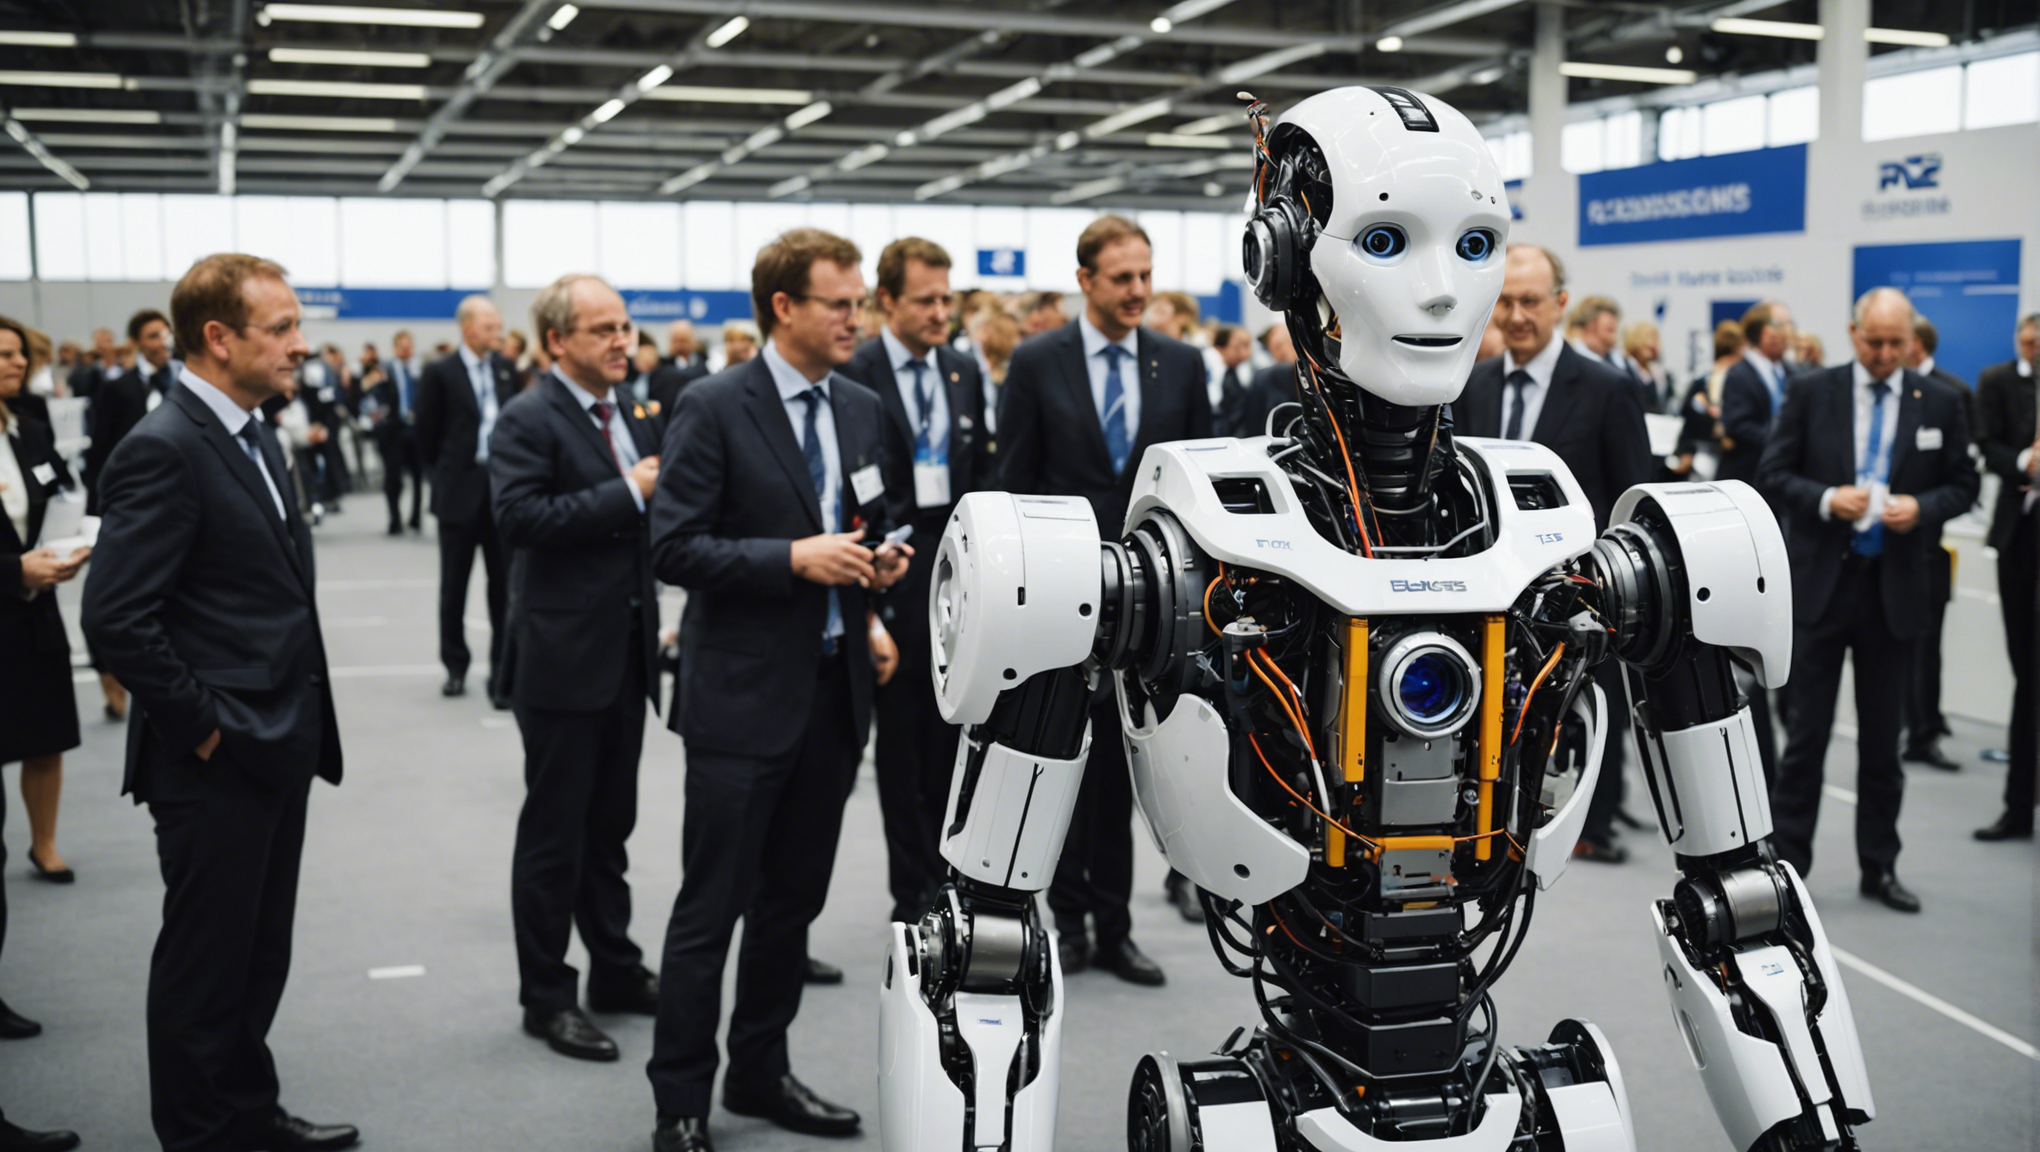 découvrez les principales raisons de participer à robobusiness europe 2014 et saisissez l'opportunité de rencontrer des experts de l'industrie de la robotique, d'explorer les dernières avancées technologiques et de développer votre réseau professionnel.